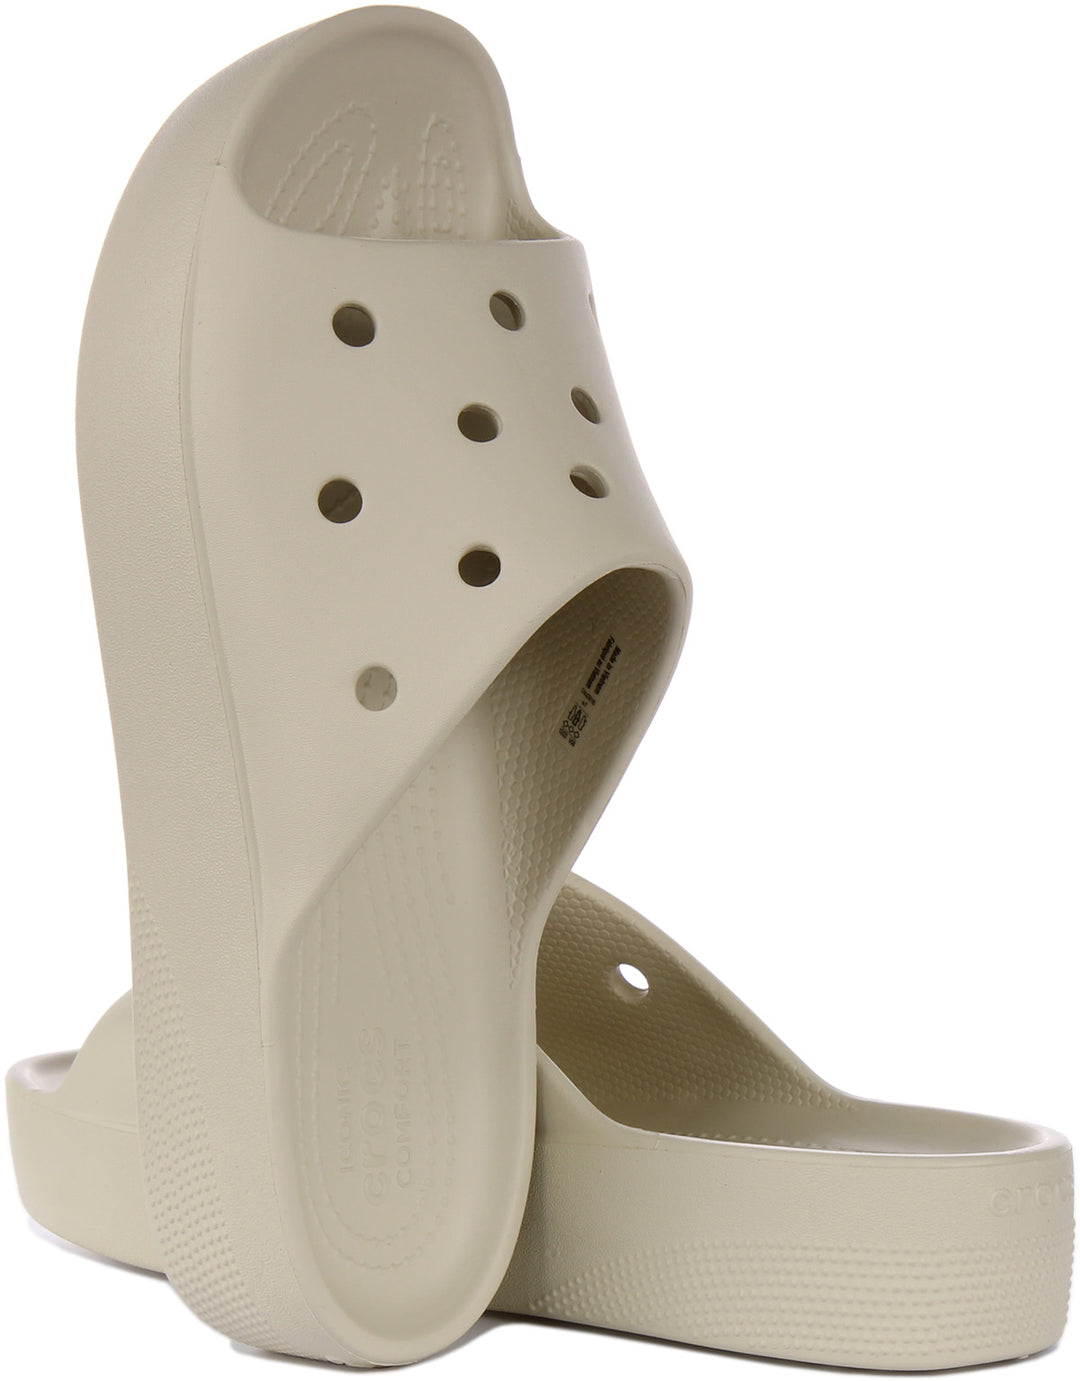 Crocs Classic Platform Sandale pour femmes en ivoire